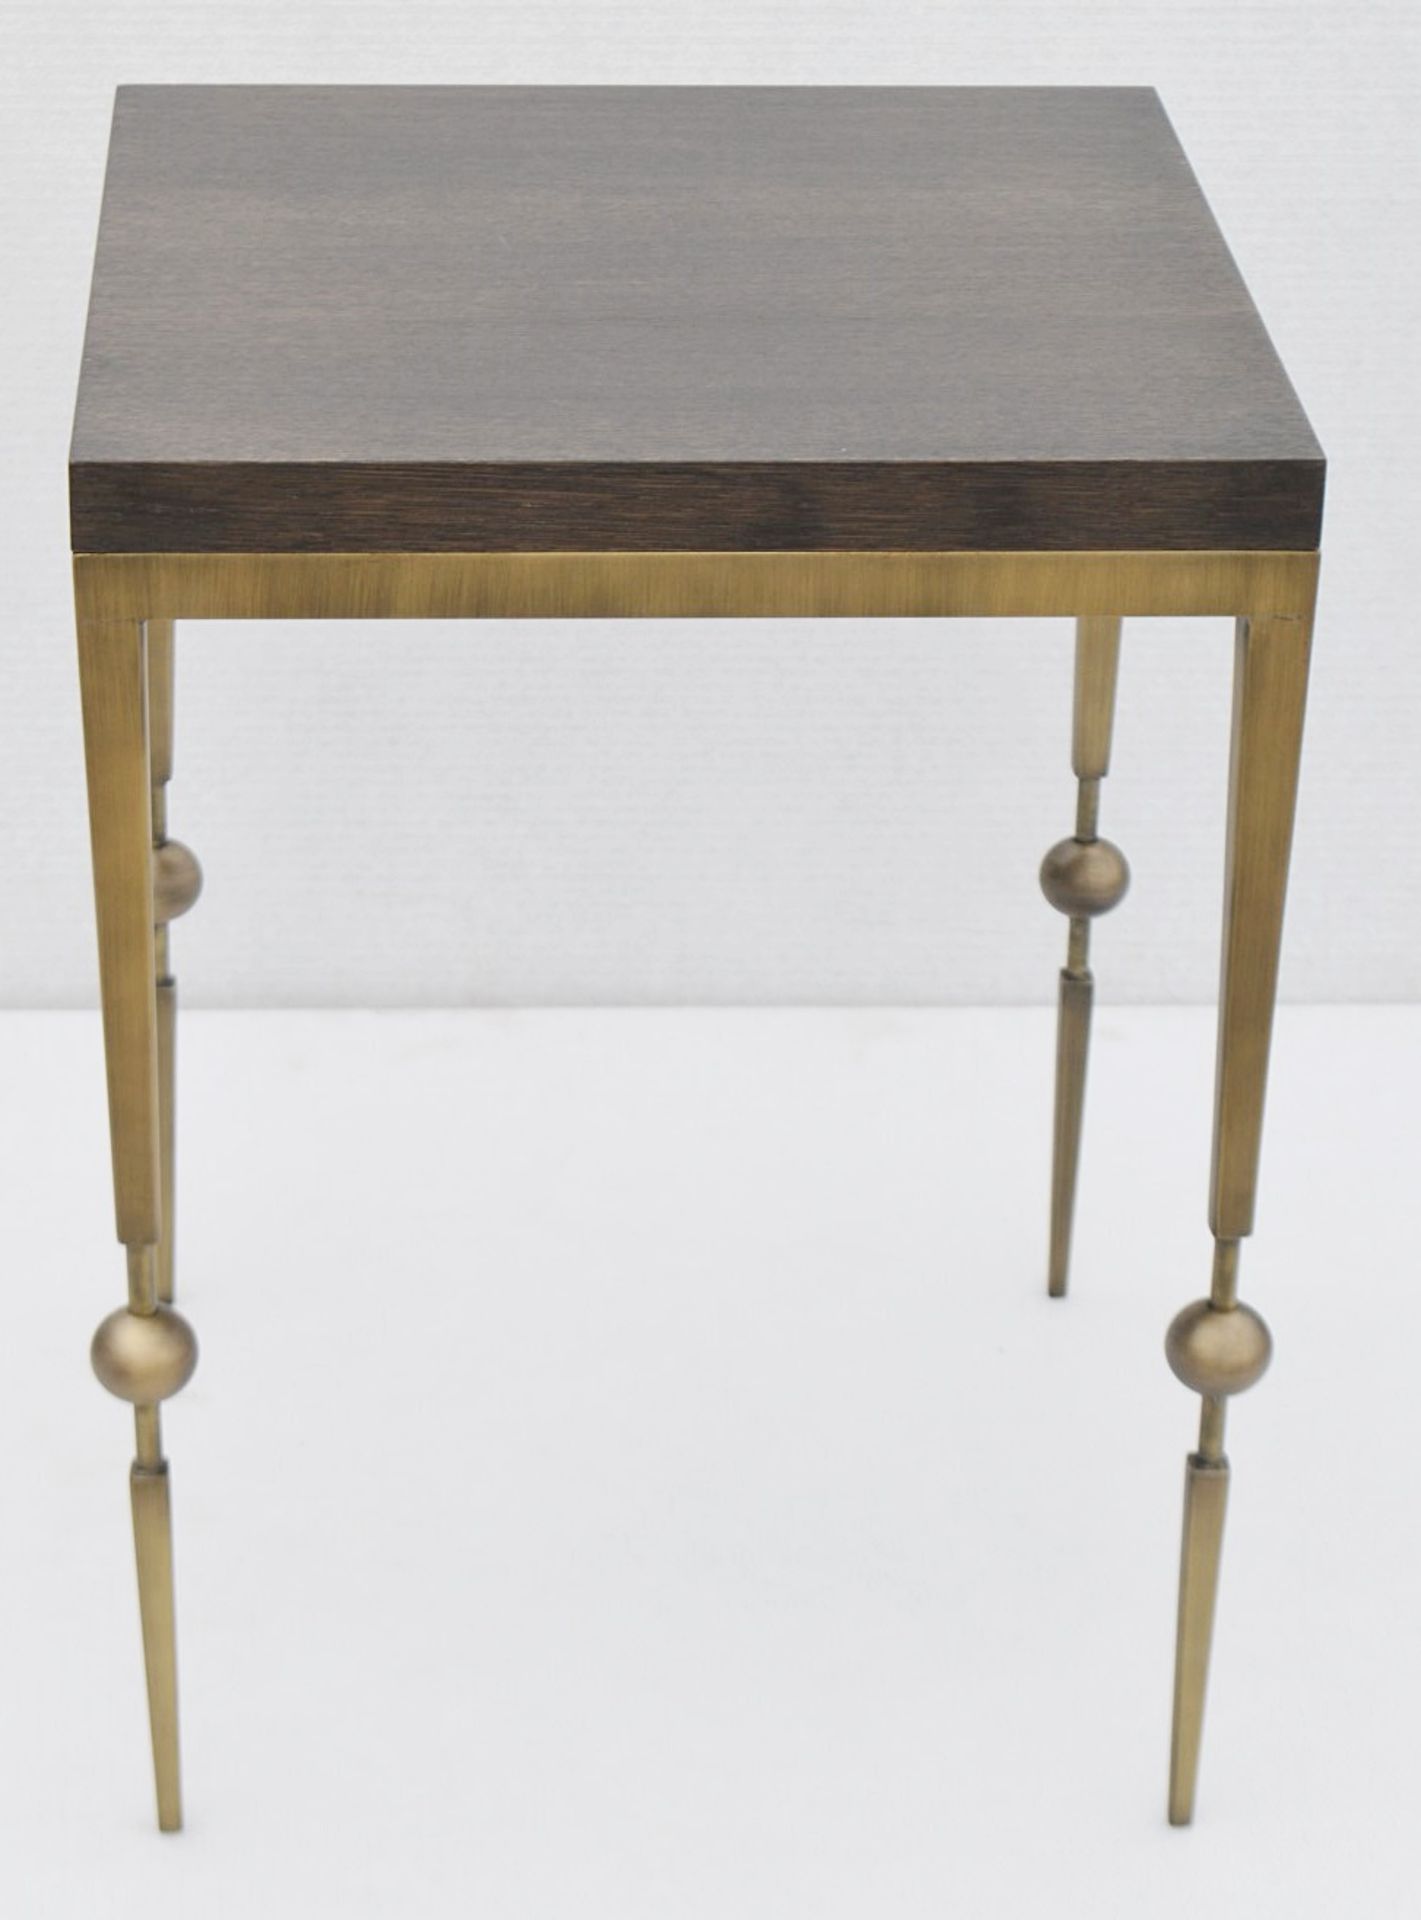 1 x JUSTIN VAN BREDA 'Sphere' Designer Occasional Table - Original RRP £1,200 - Image 4 of 6